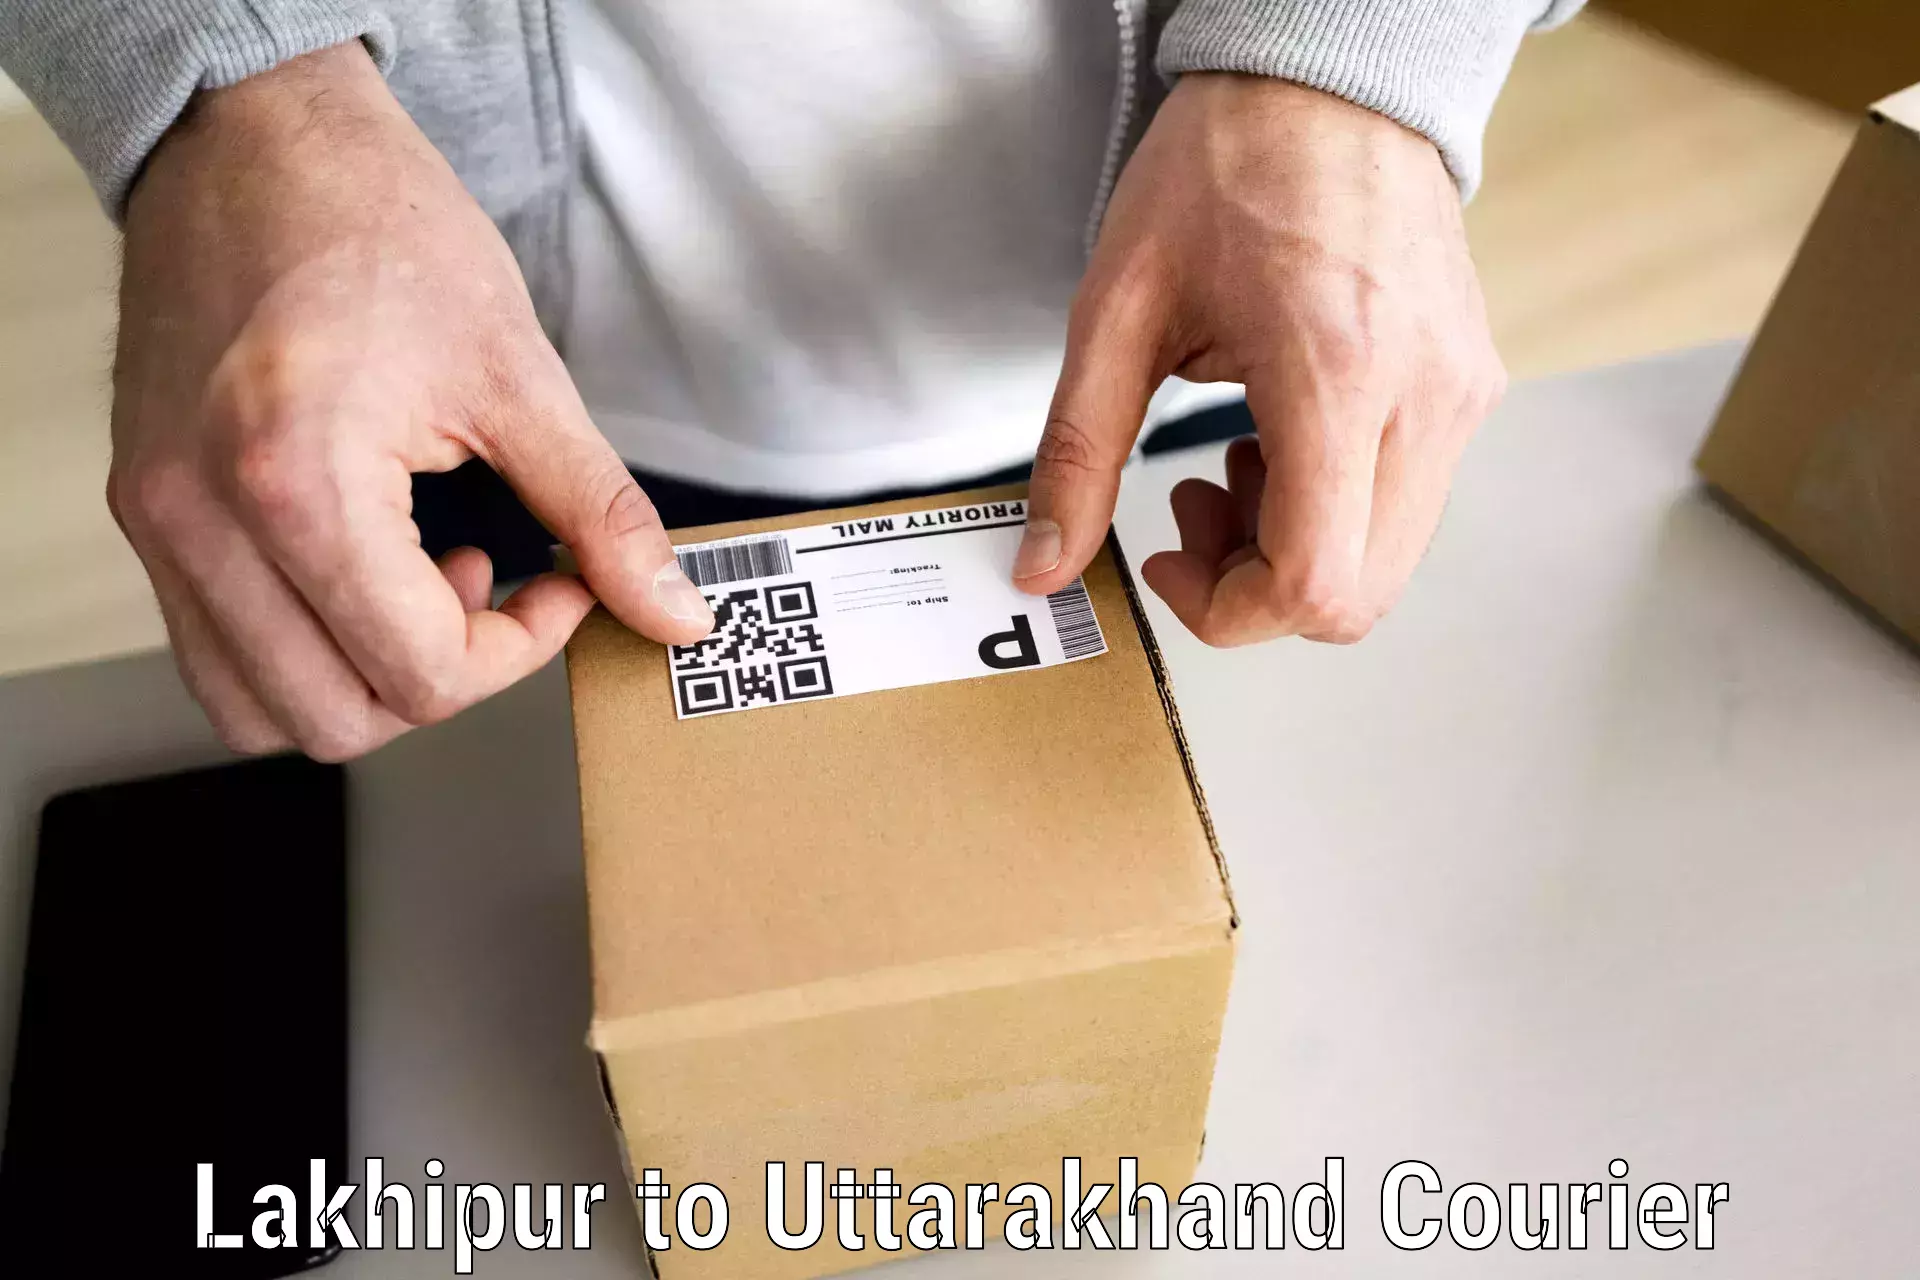 Furniture transport solutions Lakhipur to Uttarakhand